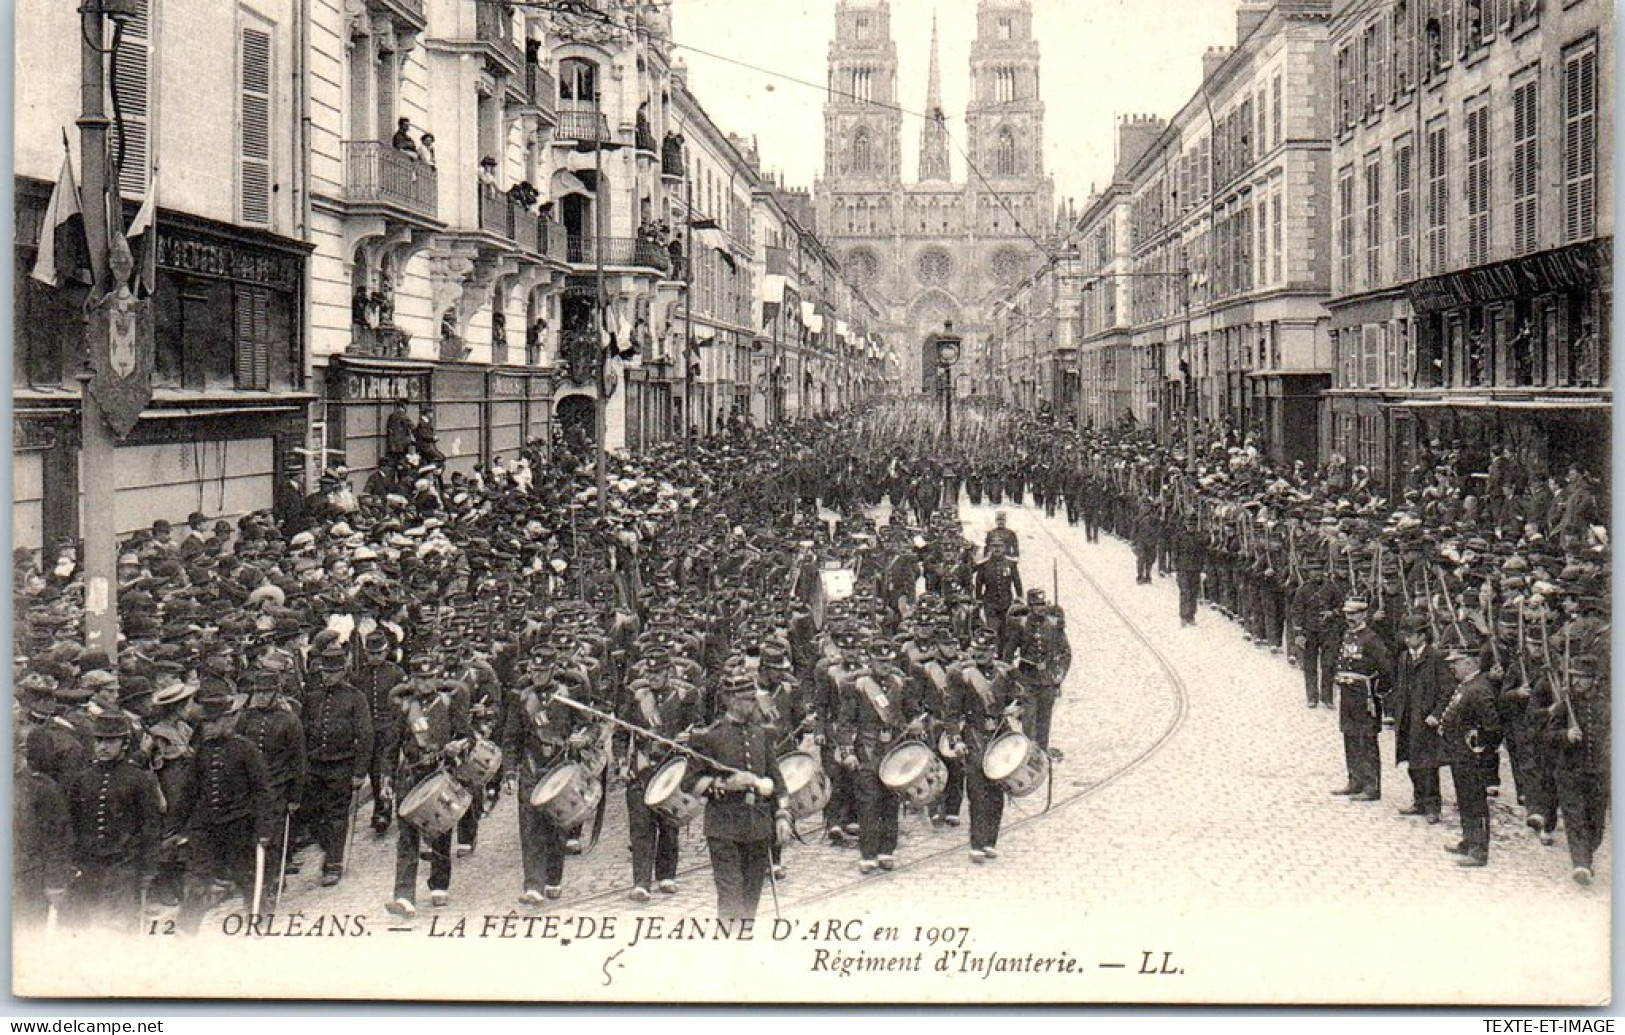 45 ORLEANS - Fete De Jeanne D'arc 1907, L'infanterie  - Orleans